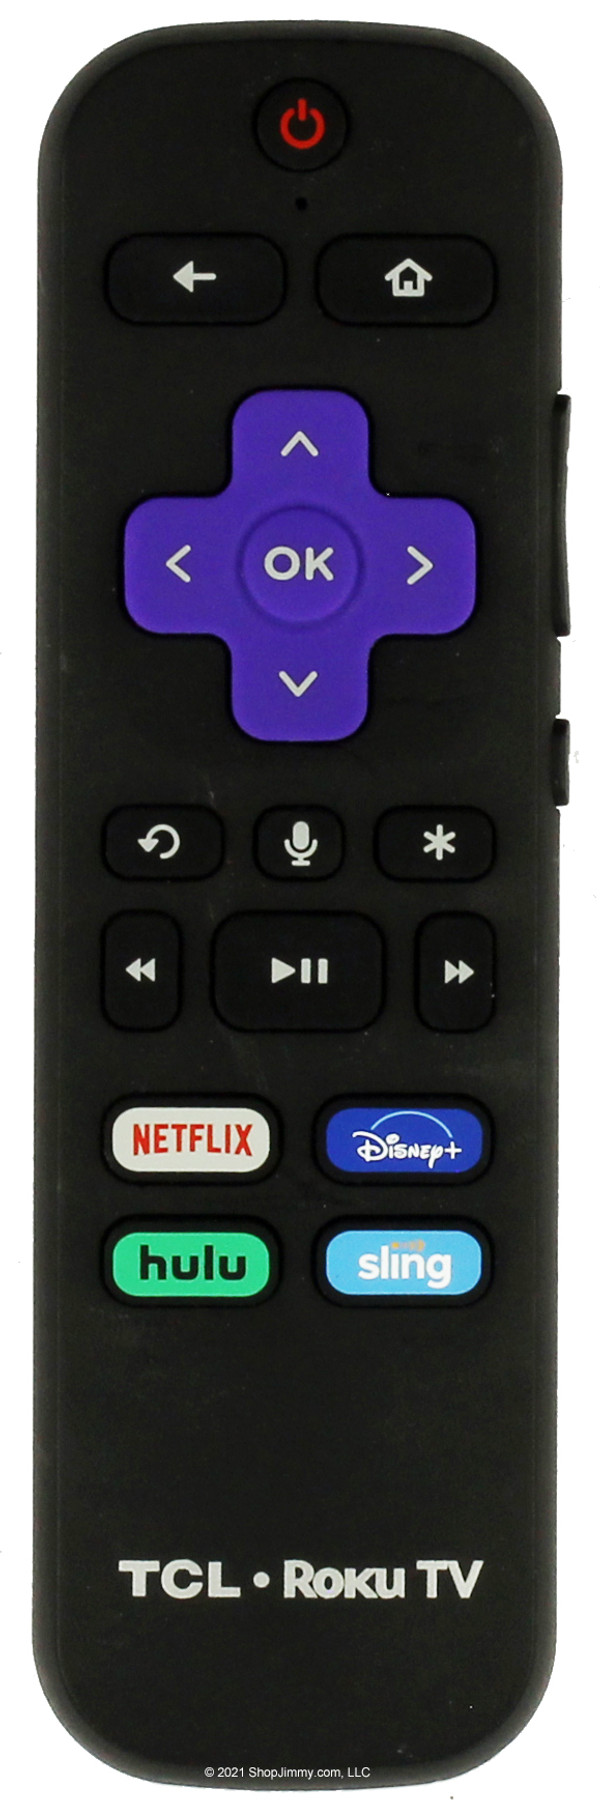 TCL 06-WFZNYY-HRC580 Roku Remote Control w/ Netflix Disney+ Hulu Sling--NEW